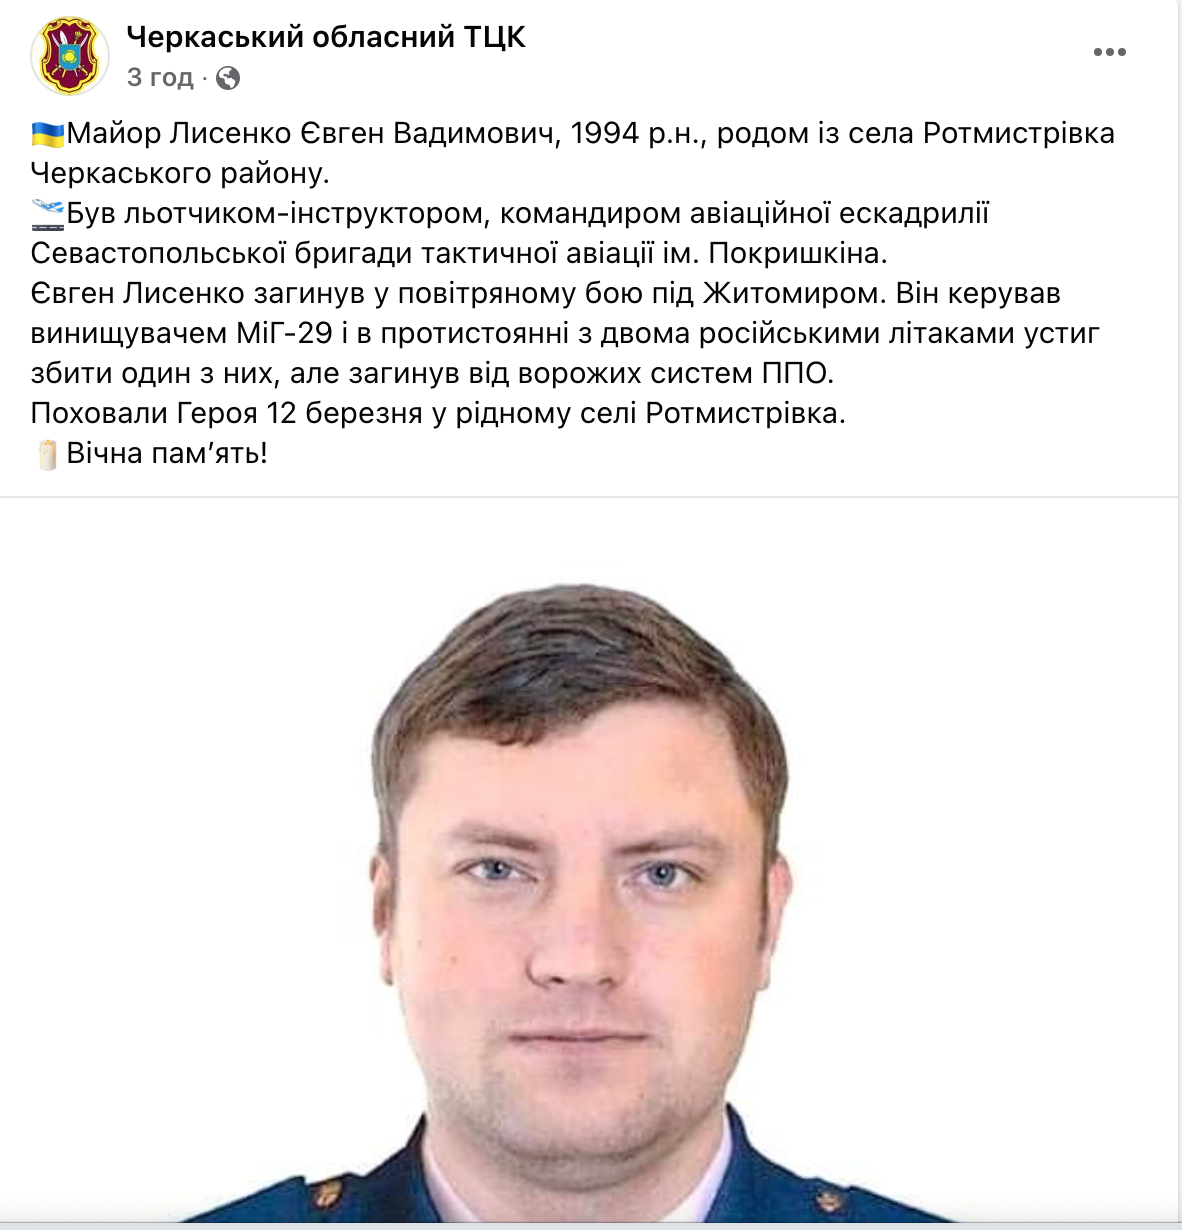 Под Житомиром погиб украинский летчик в бою с двумя самолетами врага